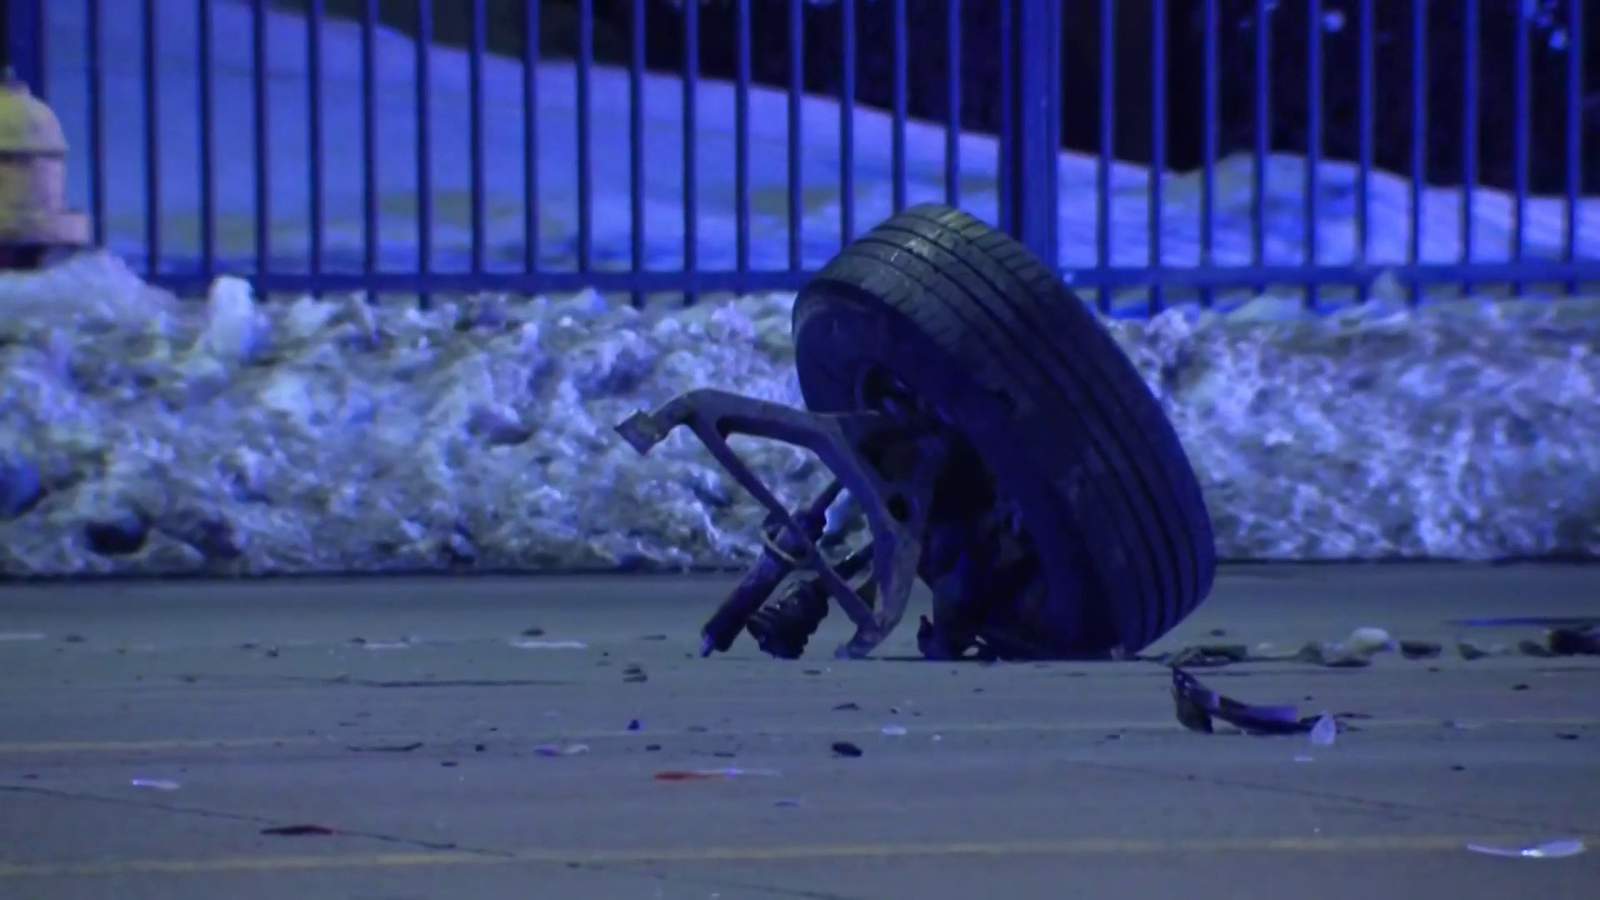 Detroit police: Man falls asleep driving, strikes police cruiser